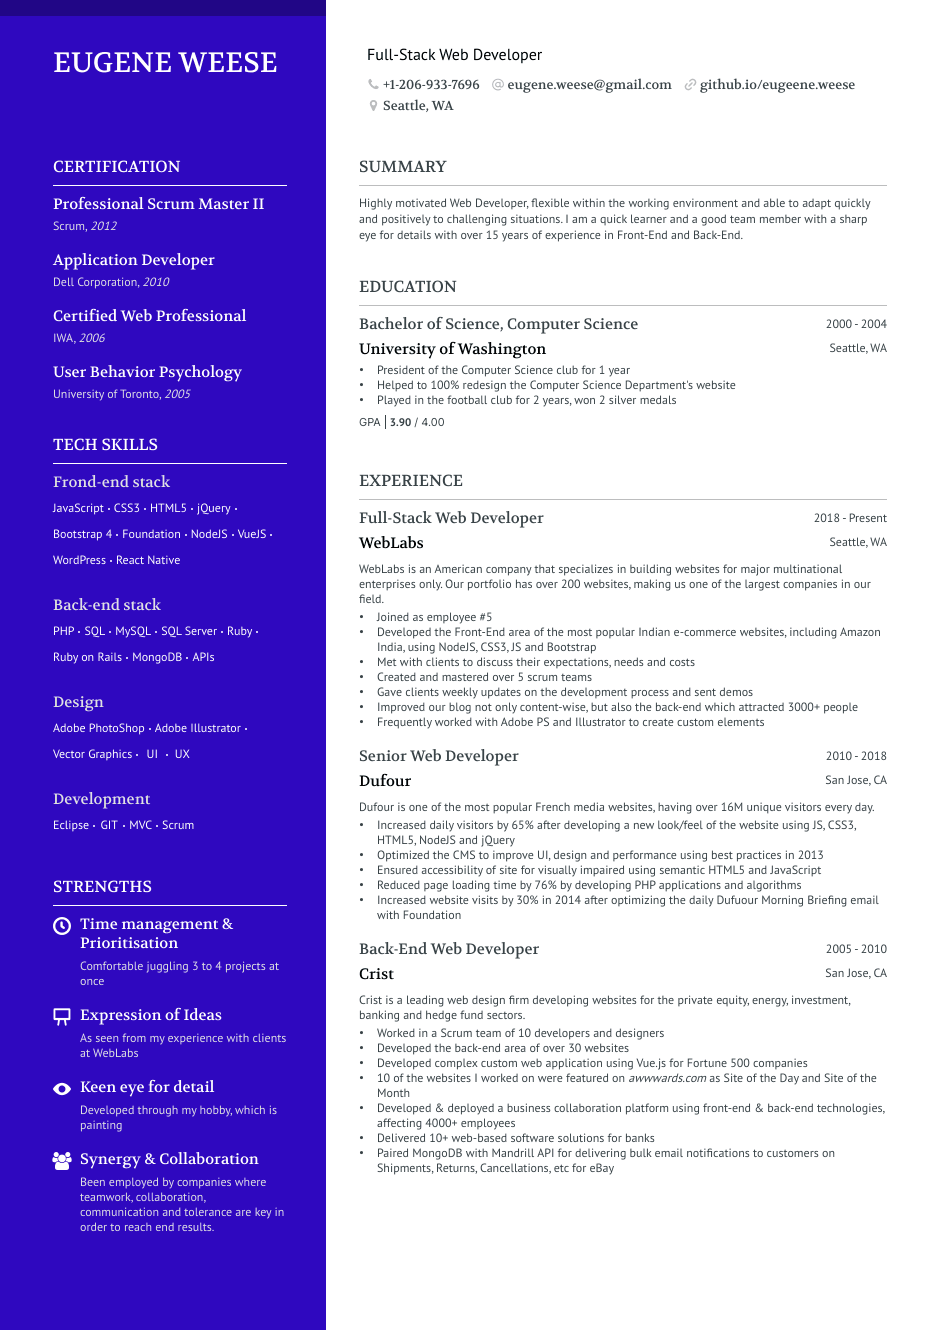 Full Stack Web Developer resume